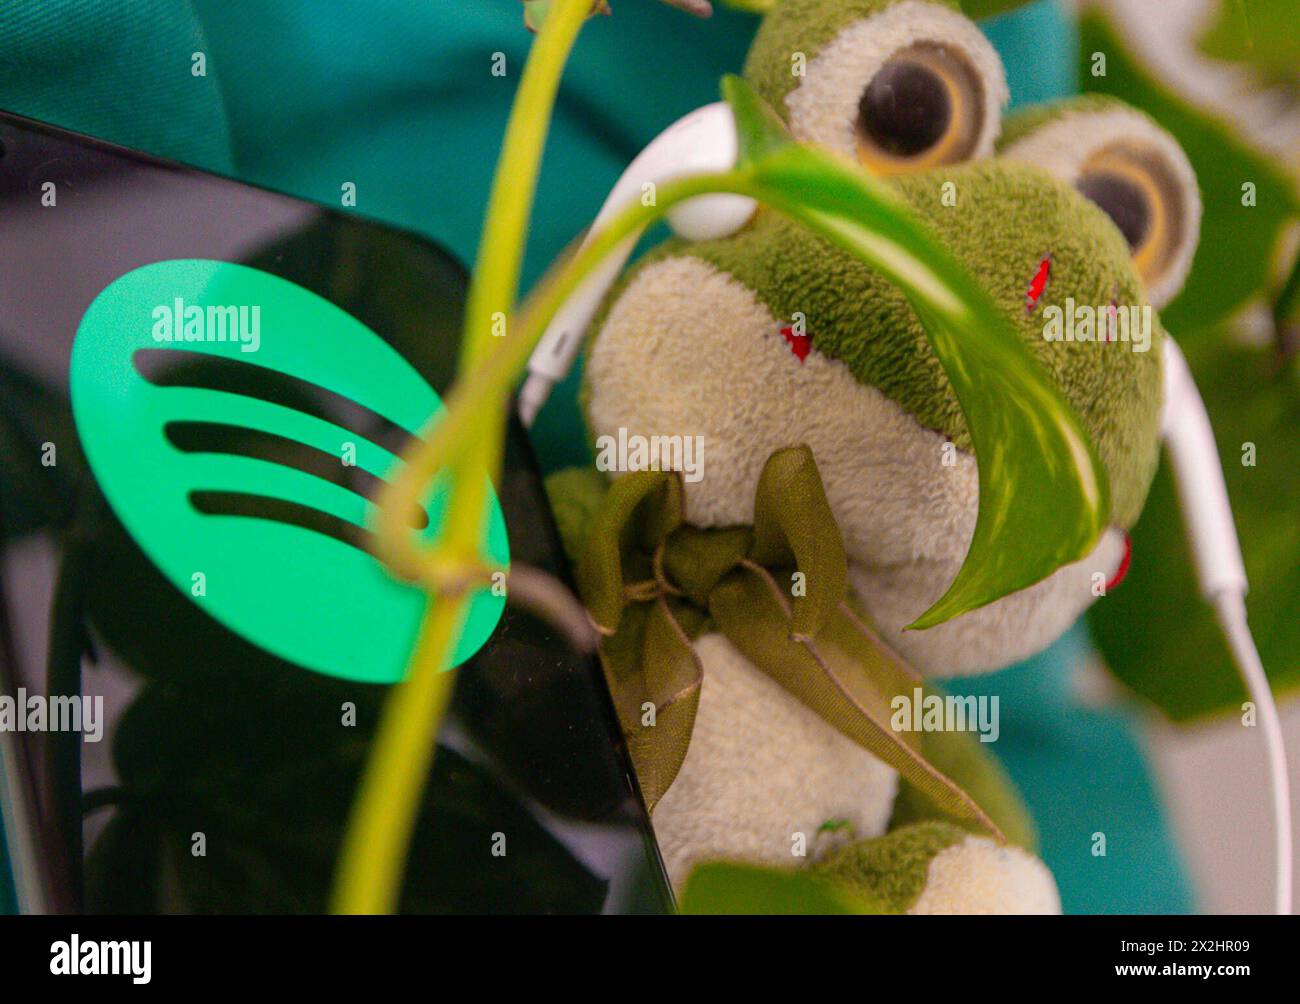 Nouvel outil sur Spotify Soo PAULO SP, 04/22/2024 - SPOTIFY/NOVA/FERRAMENTA - Une nouvelle fonctionnalité sur Spotify, mieux connue sous le nom de votre Time machine, a été annoncée ce lundi 22, qui montre le temps de lecture des chansons les plus écoutées au cours du mois. Dans les images, une photo créative d'une grenouille en peluche jouissant de la musique dans le calme du vert, la couleur du symbole Spotify. Foto : Adriana Toffetti/ATO Press/IMAGO GERAL nouvel outil sur Spotify Sao Paulo Brasil Copyright : xAdrianaxToffettix Banque D'Images